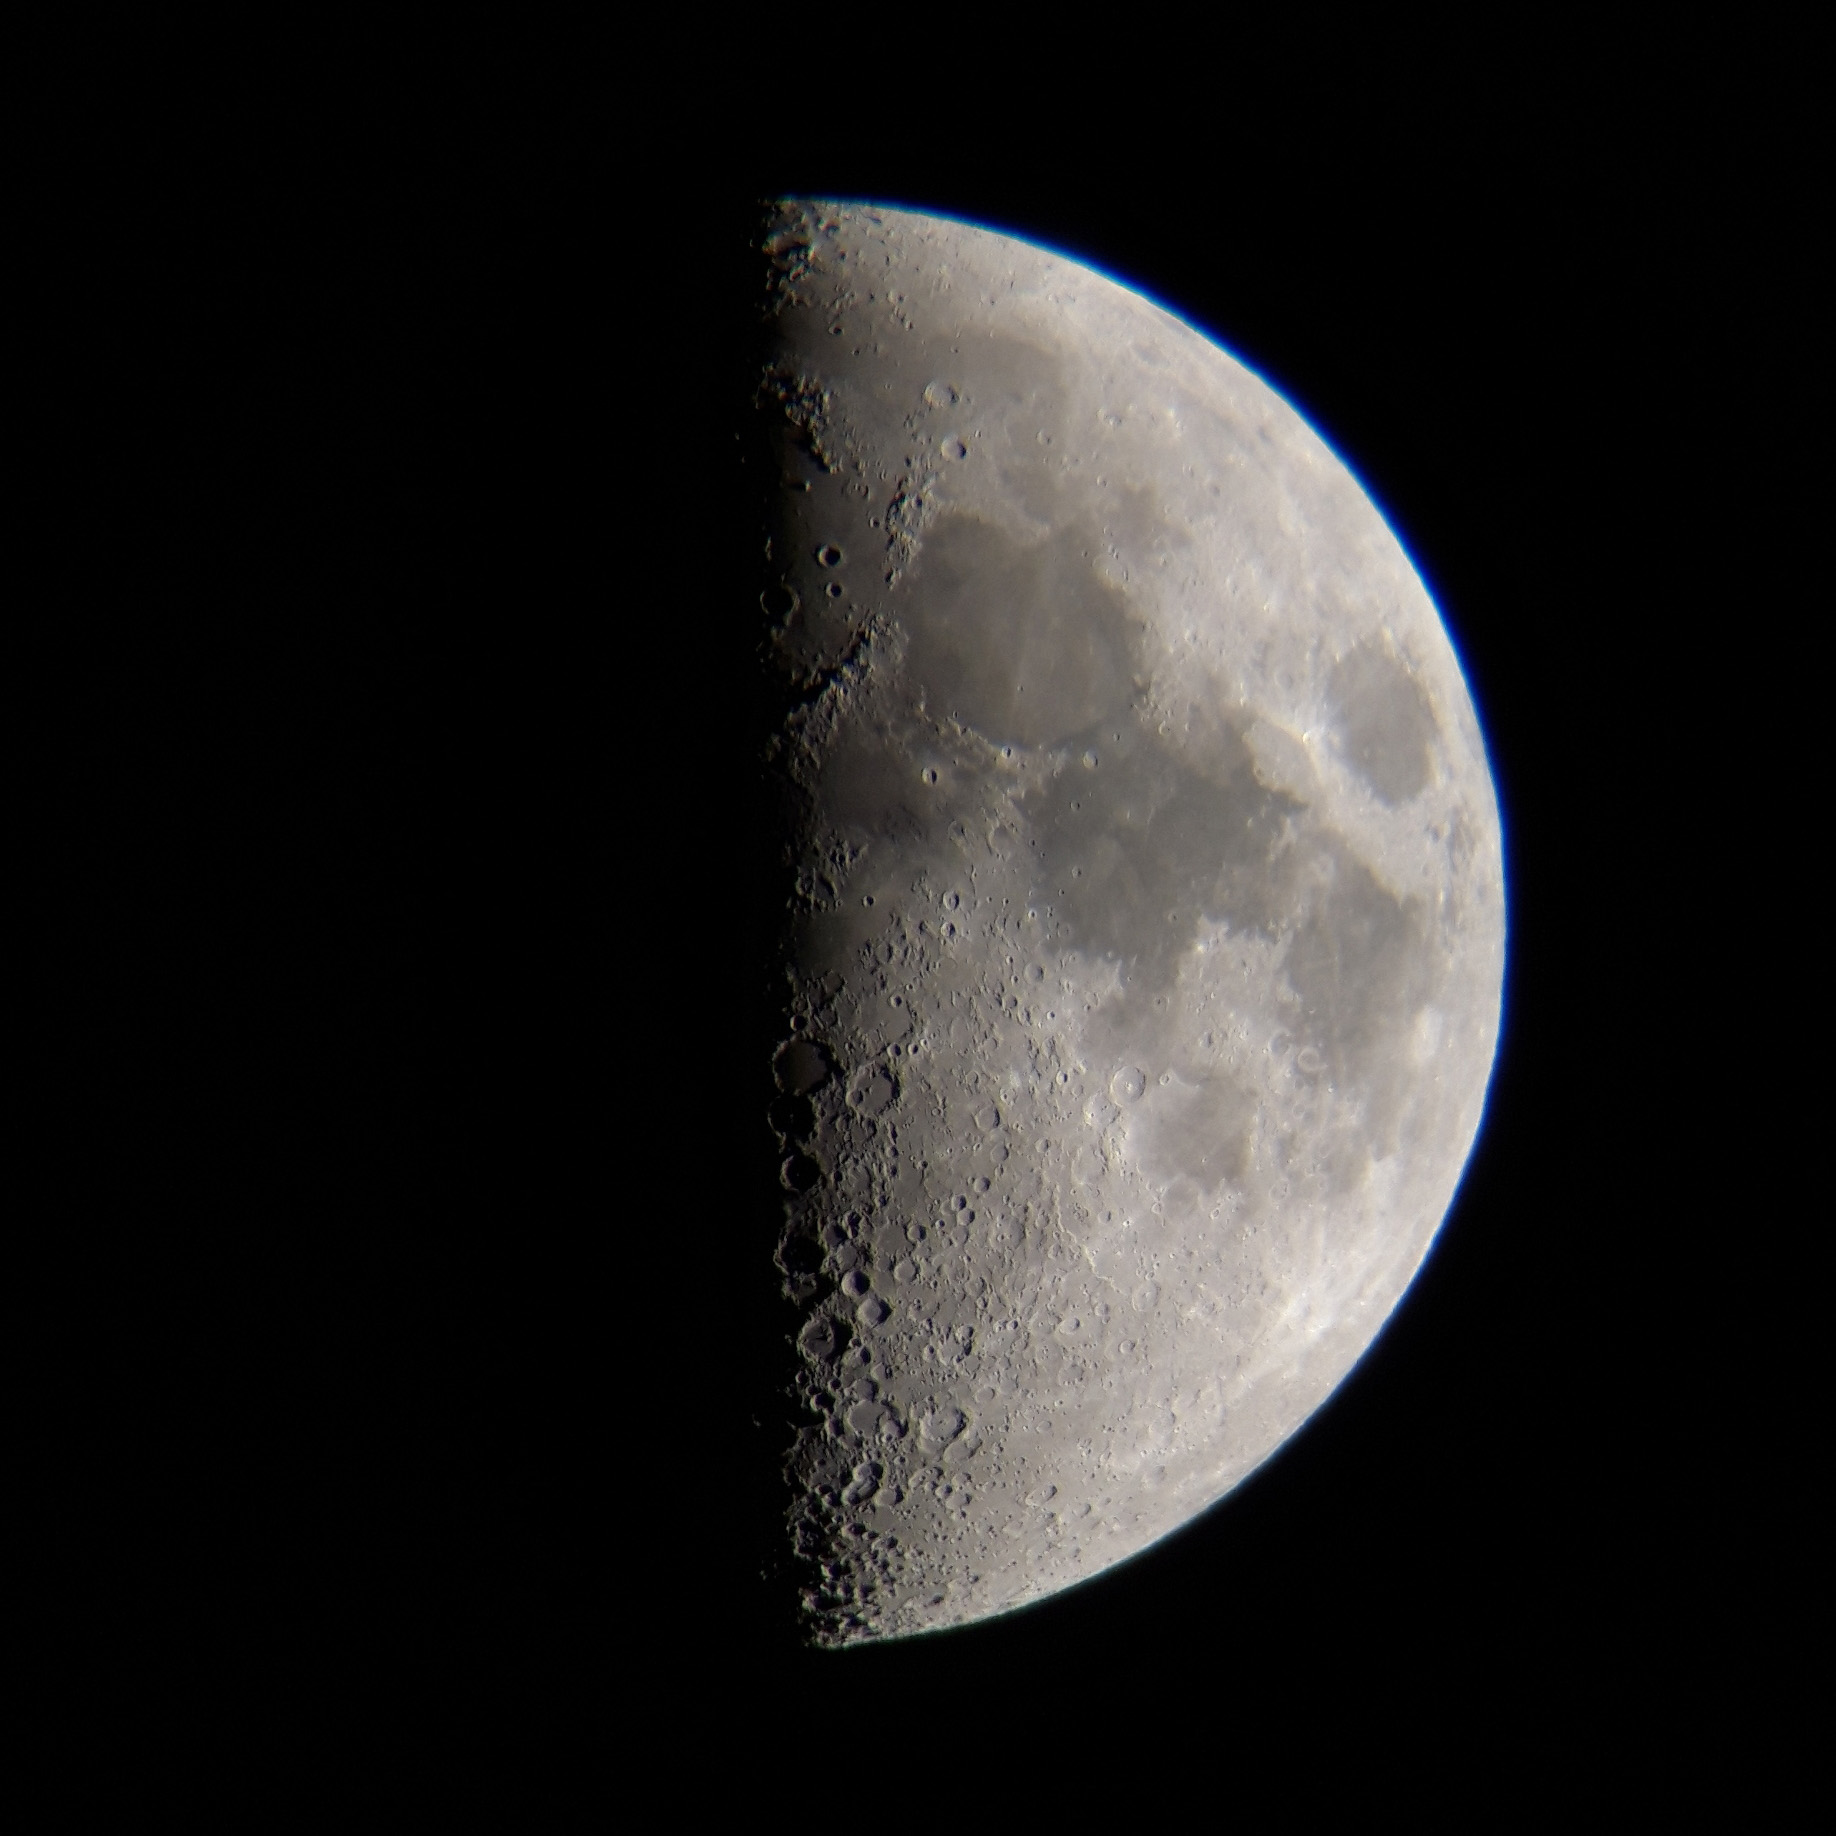 De maan gefotografeerd met behulp van een smartphone door een telescoop. Door de schaduwwerking op de dag-nachtgrens zijn de kraters op indrukwekkende wijze zichtbaar. De maan is tijdens de Landelijke Sterrenkijkdagen voor iets meer dan de helft verlicht